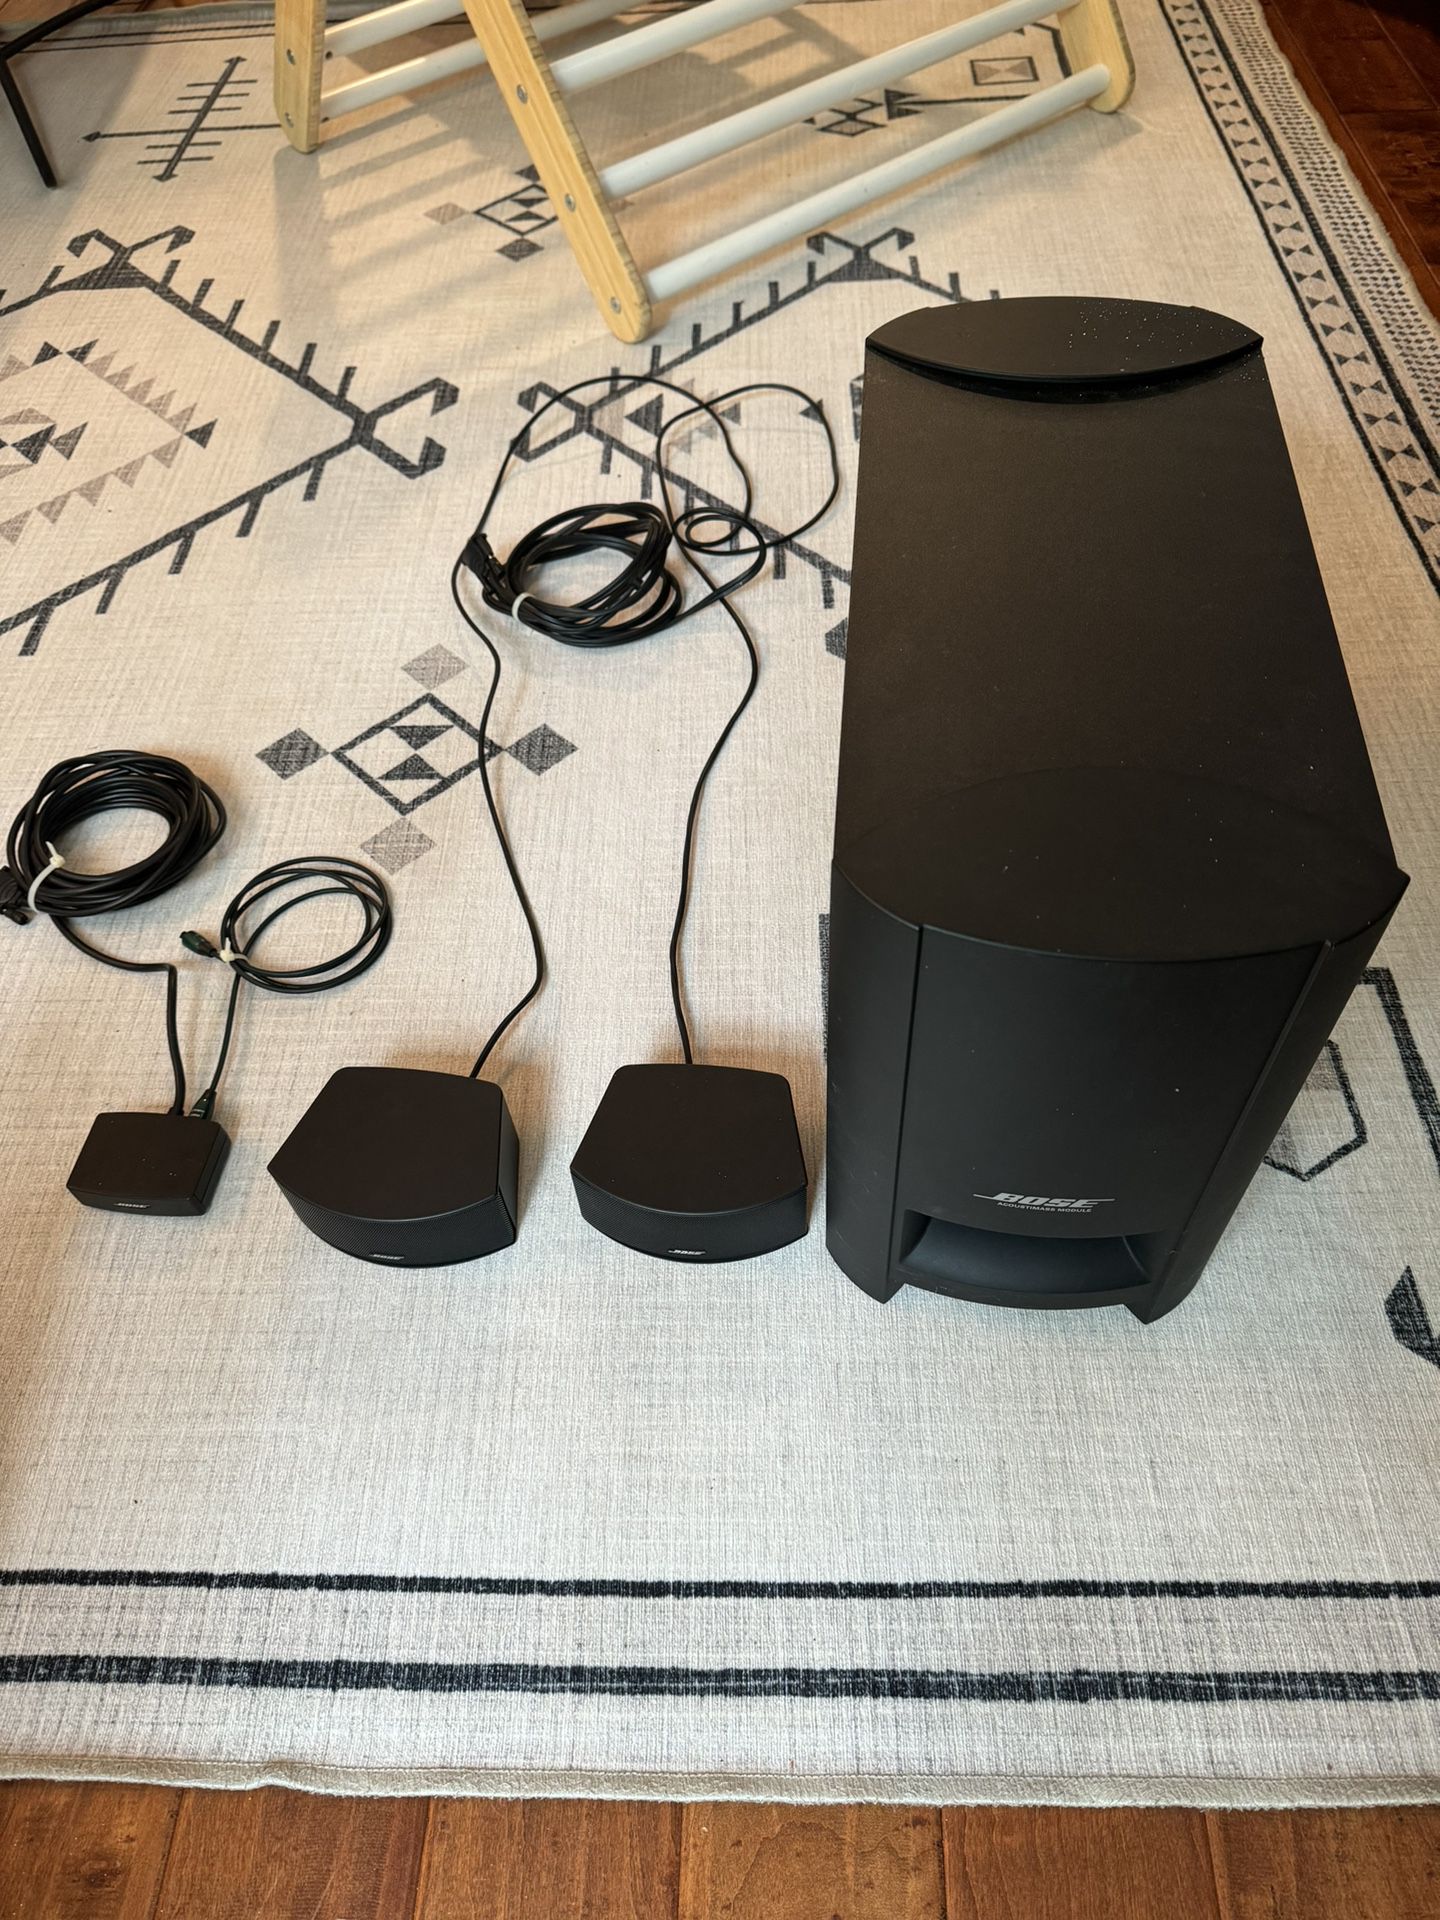 Bose Sound System 